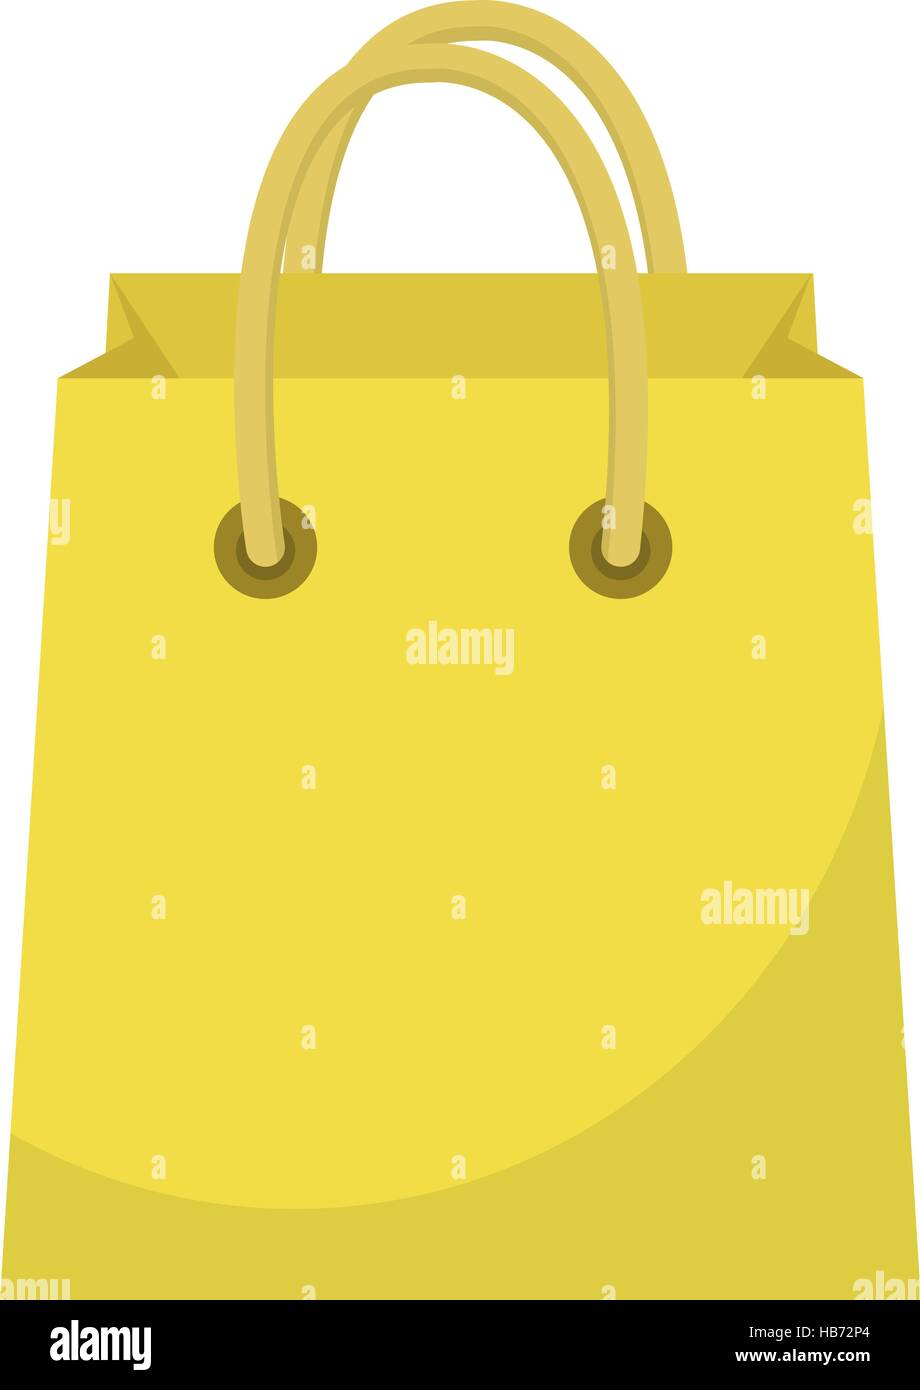 Warenkorb-Symbol flach Stil. Papier Taschen isoliert auf einem weißen Hintergrund. Geschenk-Paket. Vektor-Illustration Stock Vektor